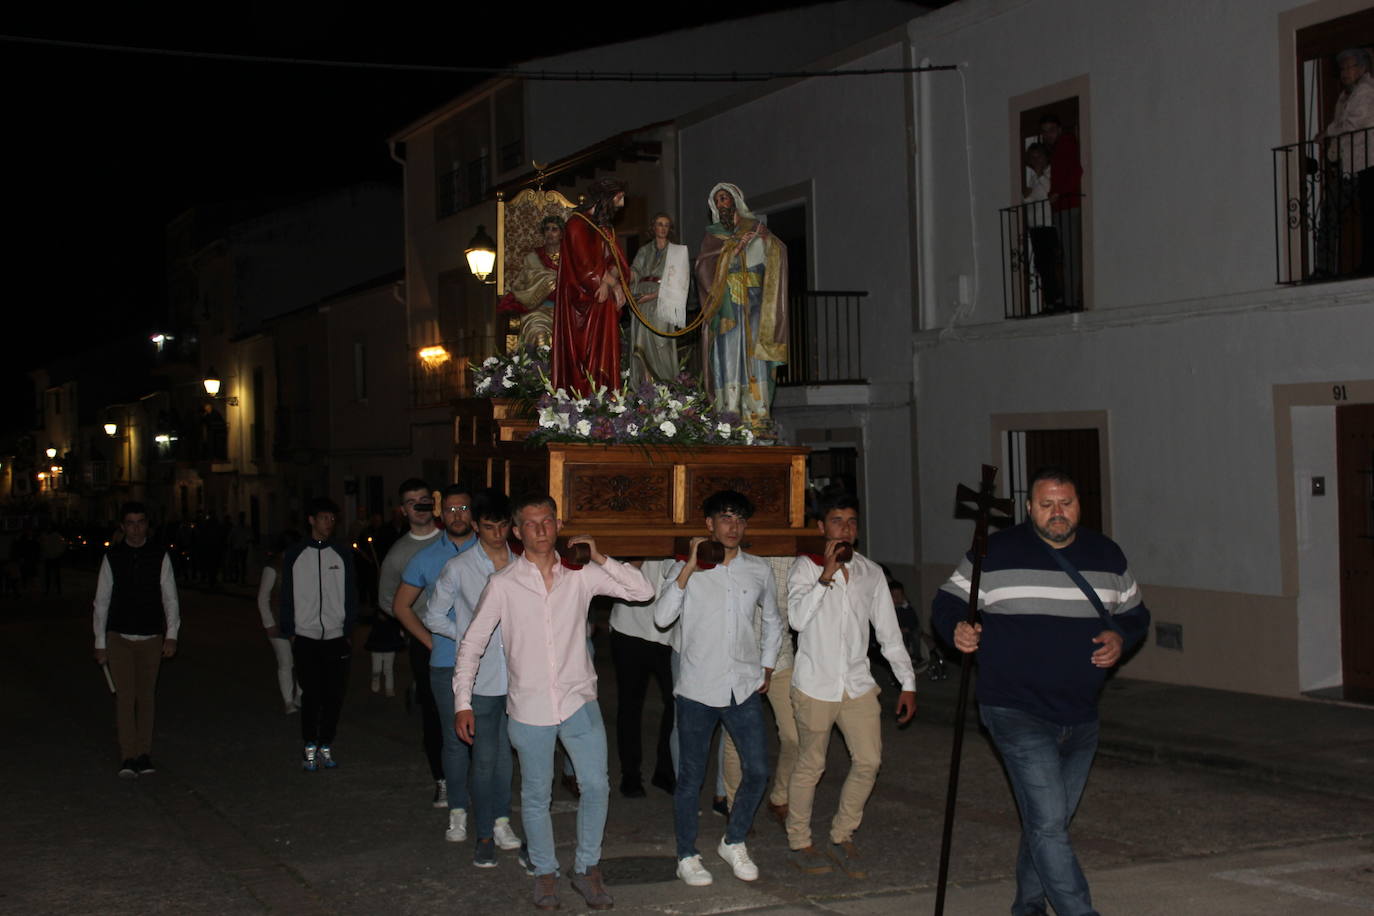 Imagen principal - Los nueve pasos de La Pasión embellecen un año más la procesión de Jueves Santo